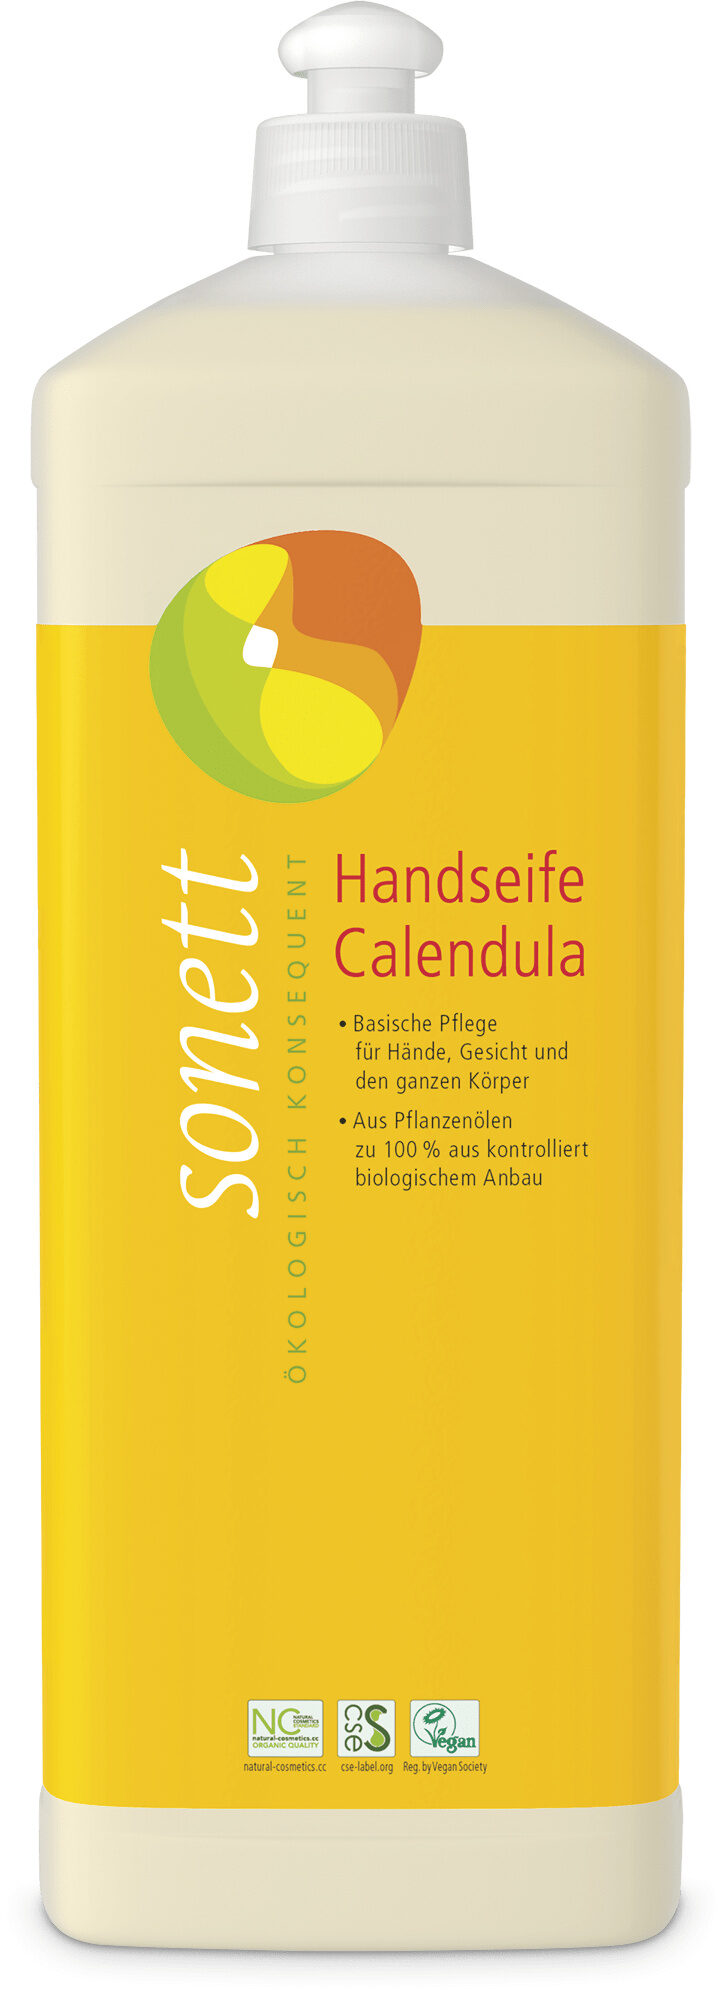 Handseife Calendula - Produkt - de